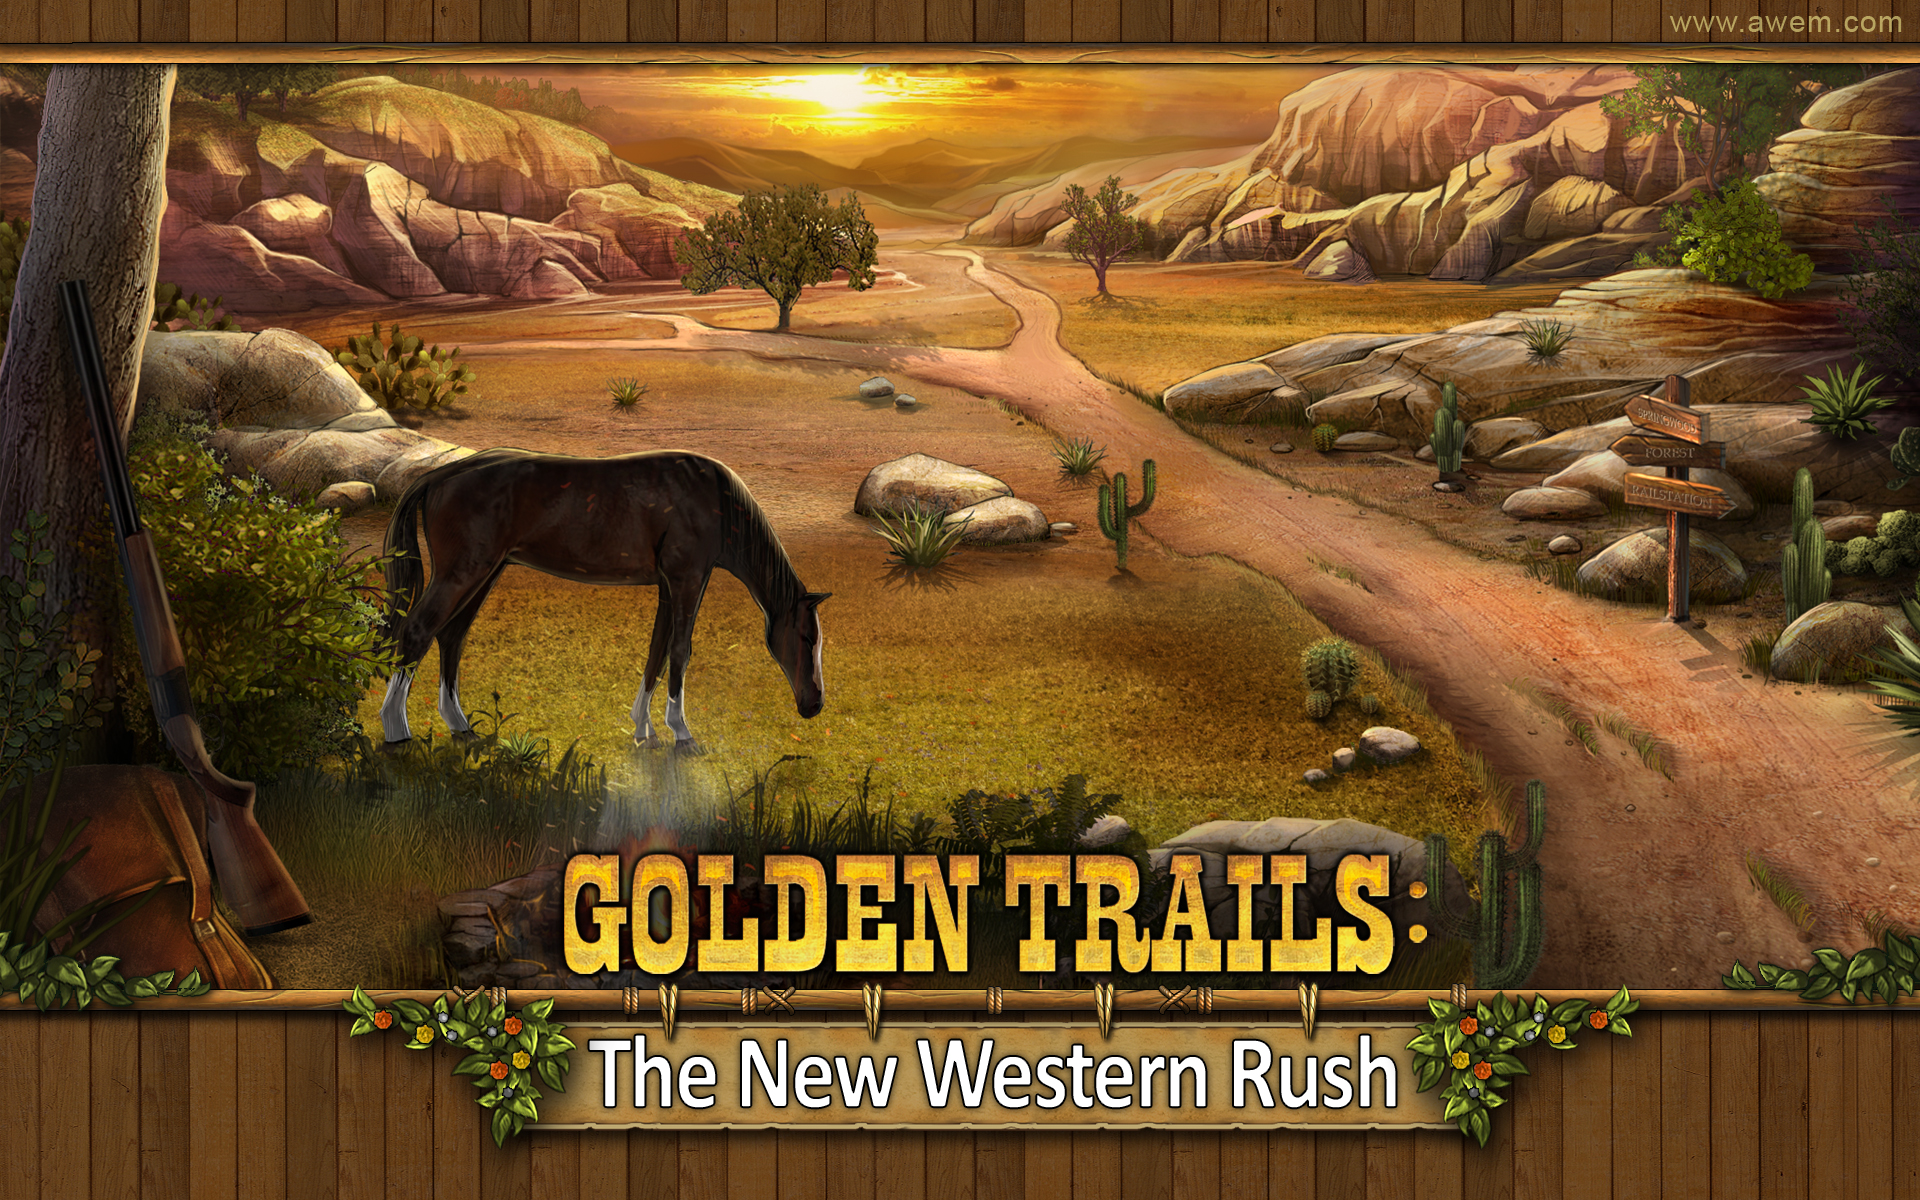 Trails Wallpaper Golden Western Image